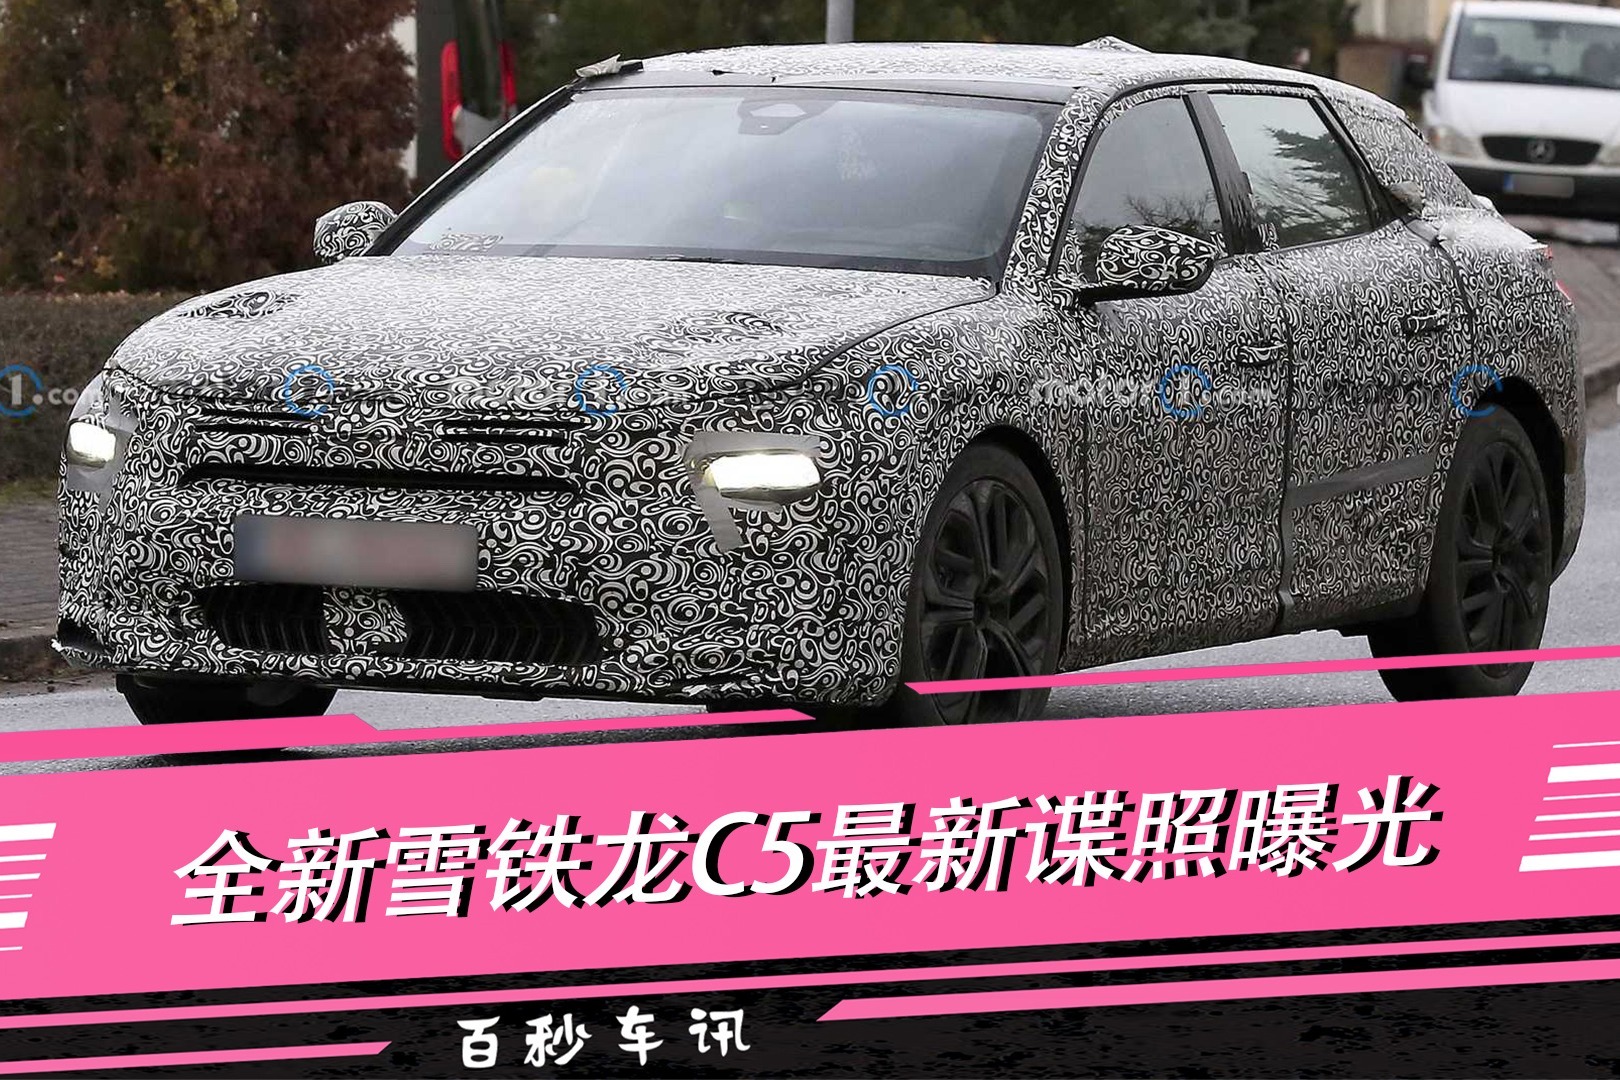 百秒车讯全新雪铁龙c5最新谍照曝光有望于4月上海车展发布